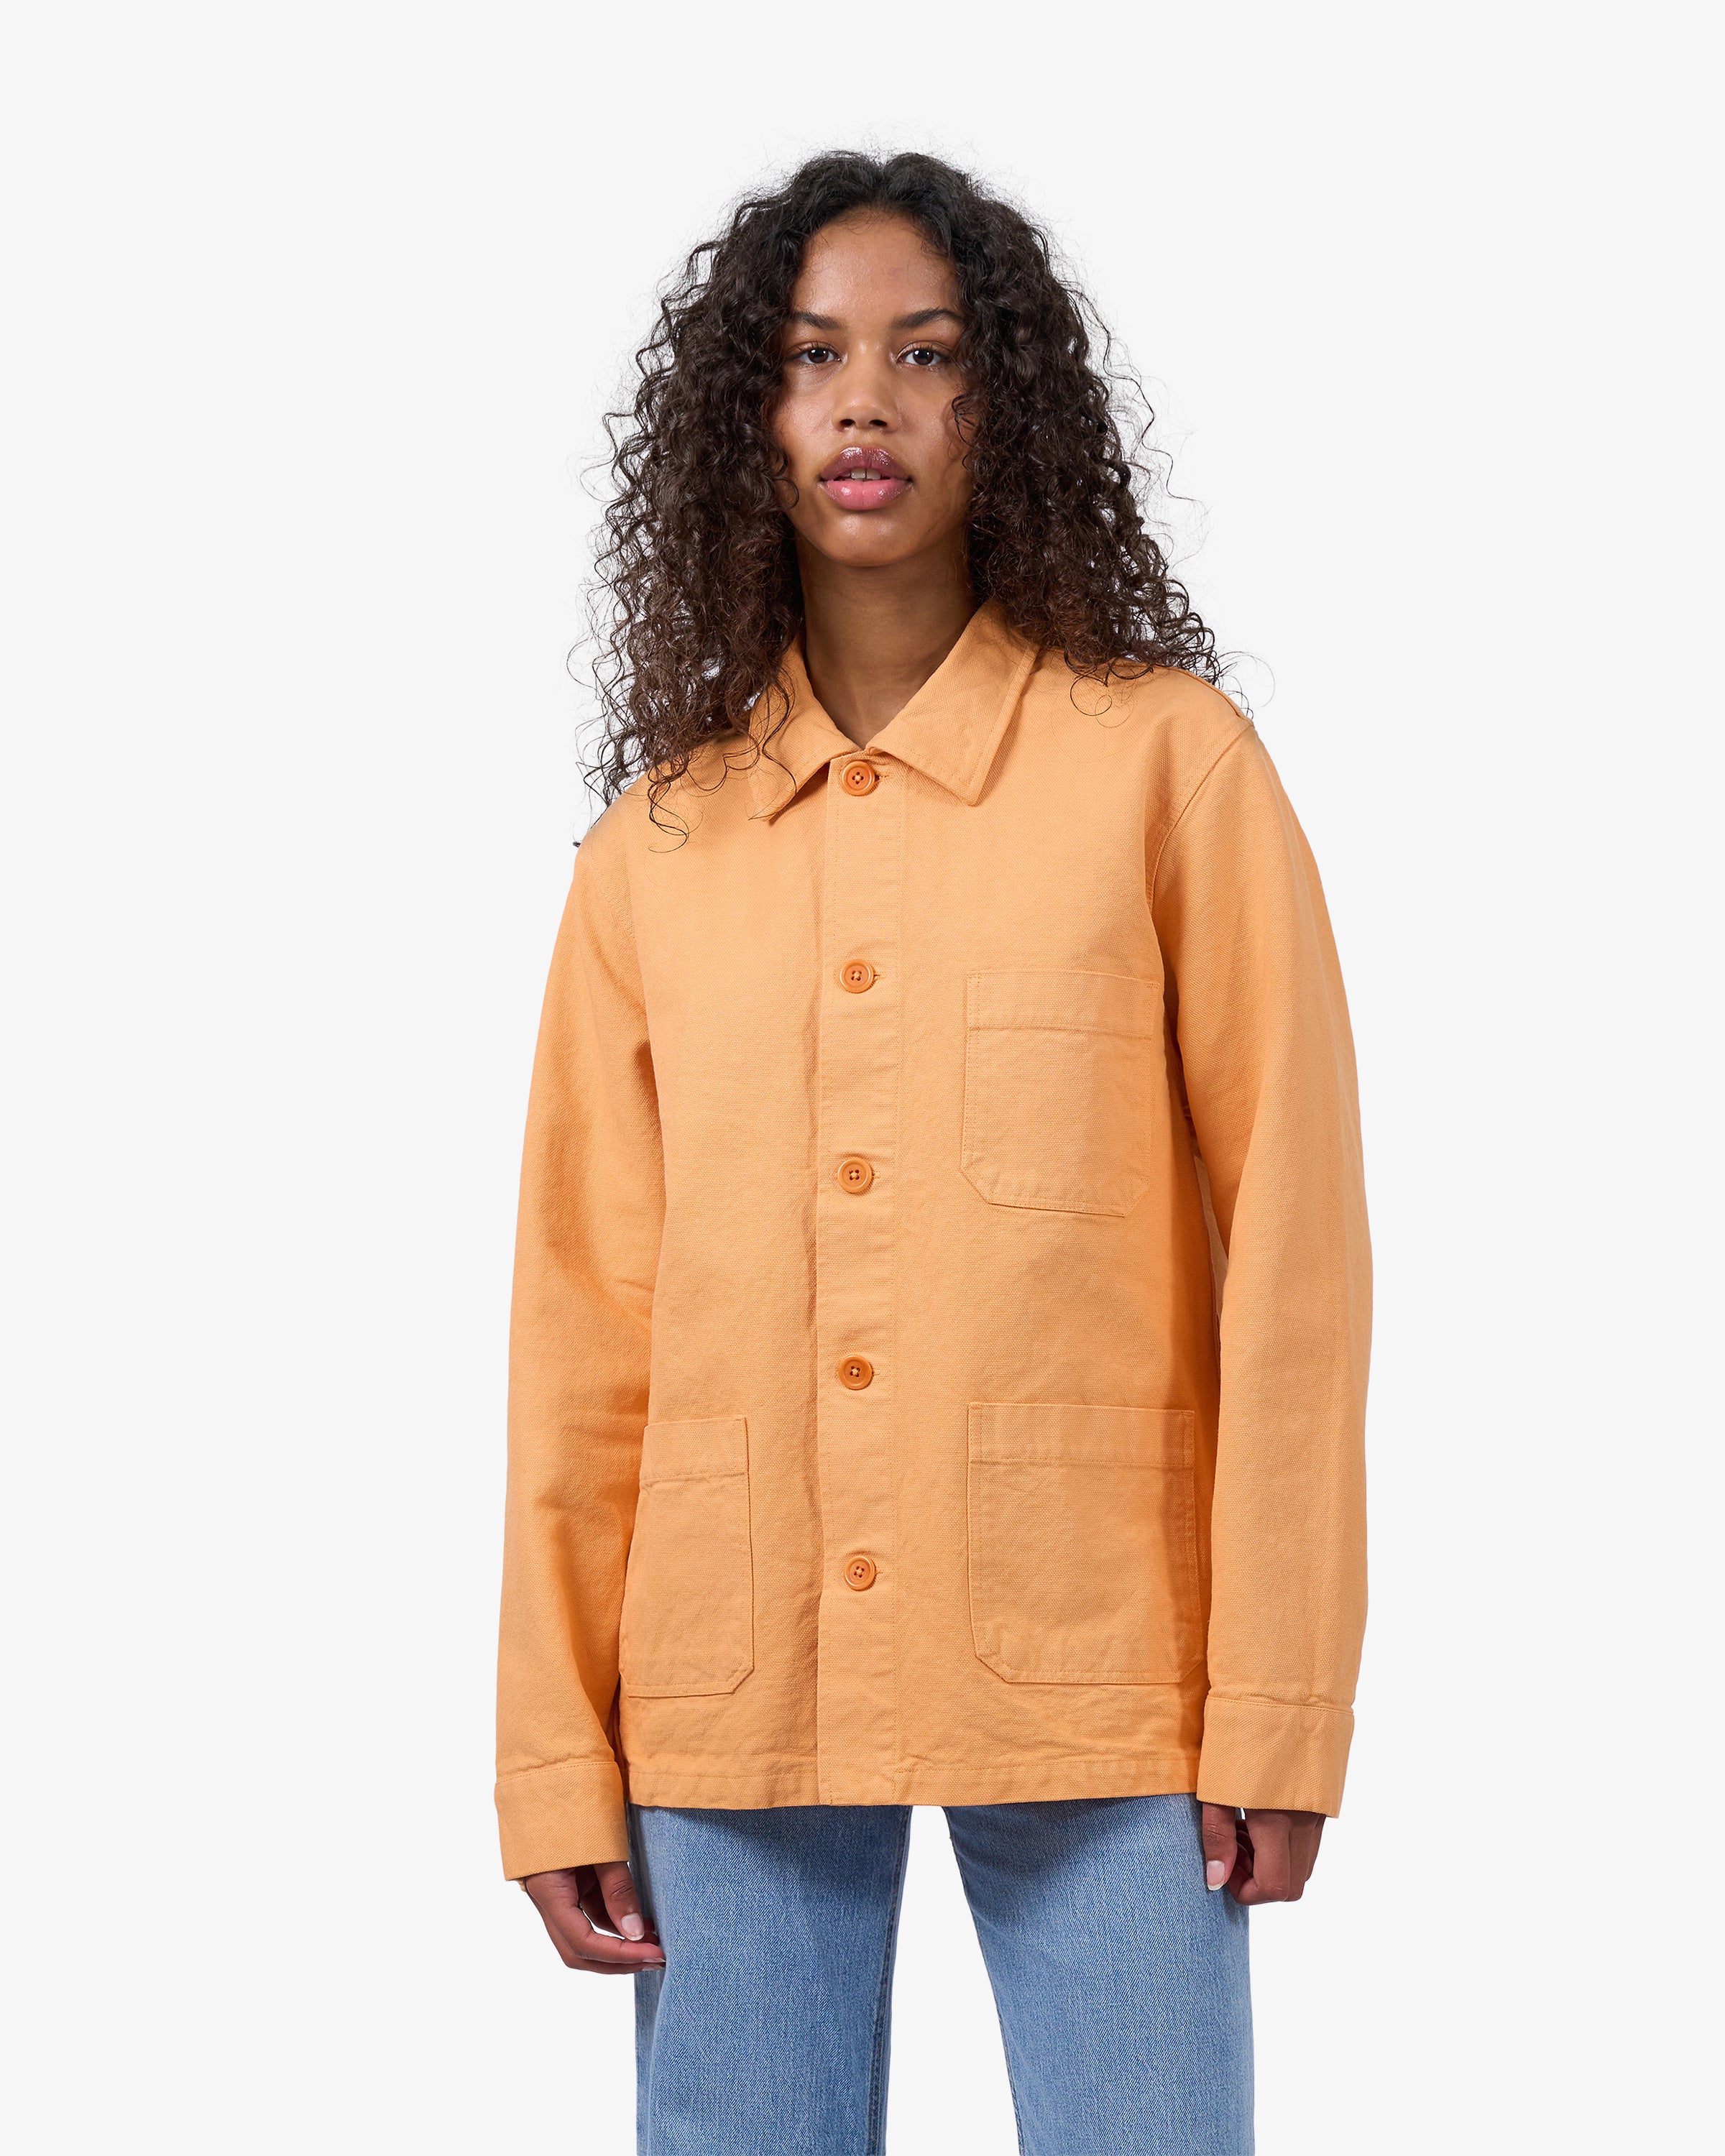 Organic Workwear Jacket - Sandstone Orange